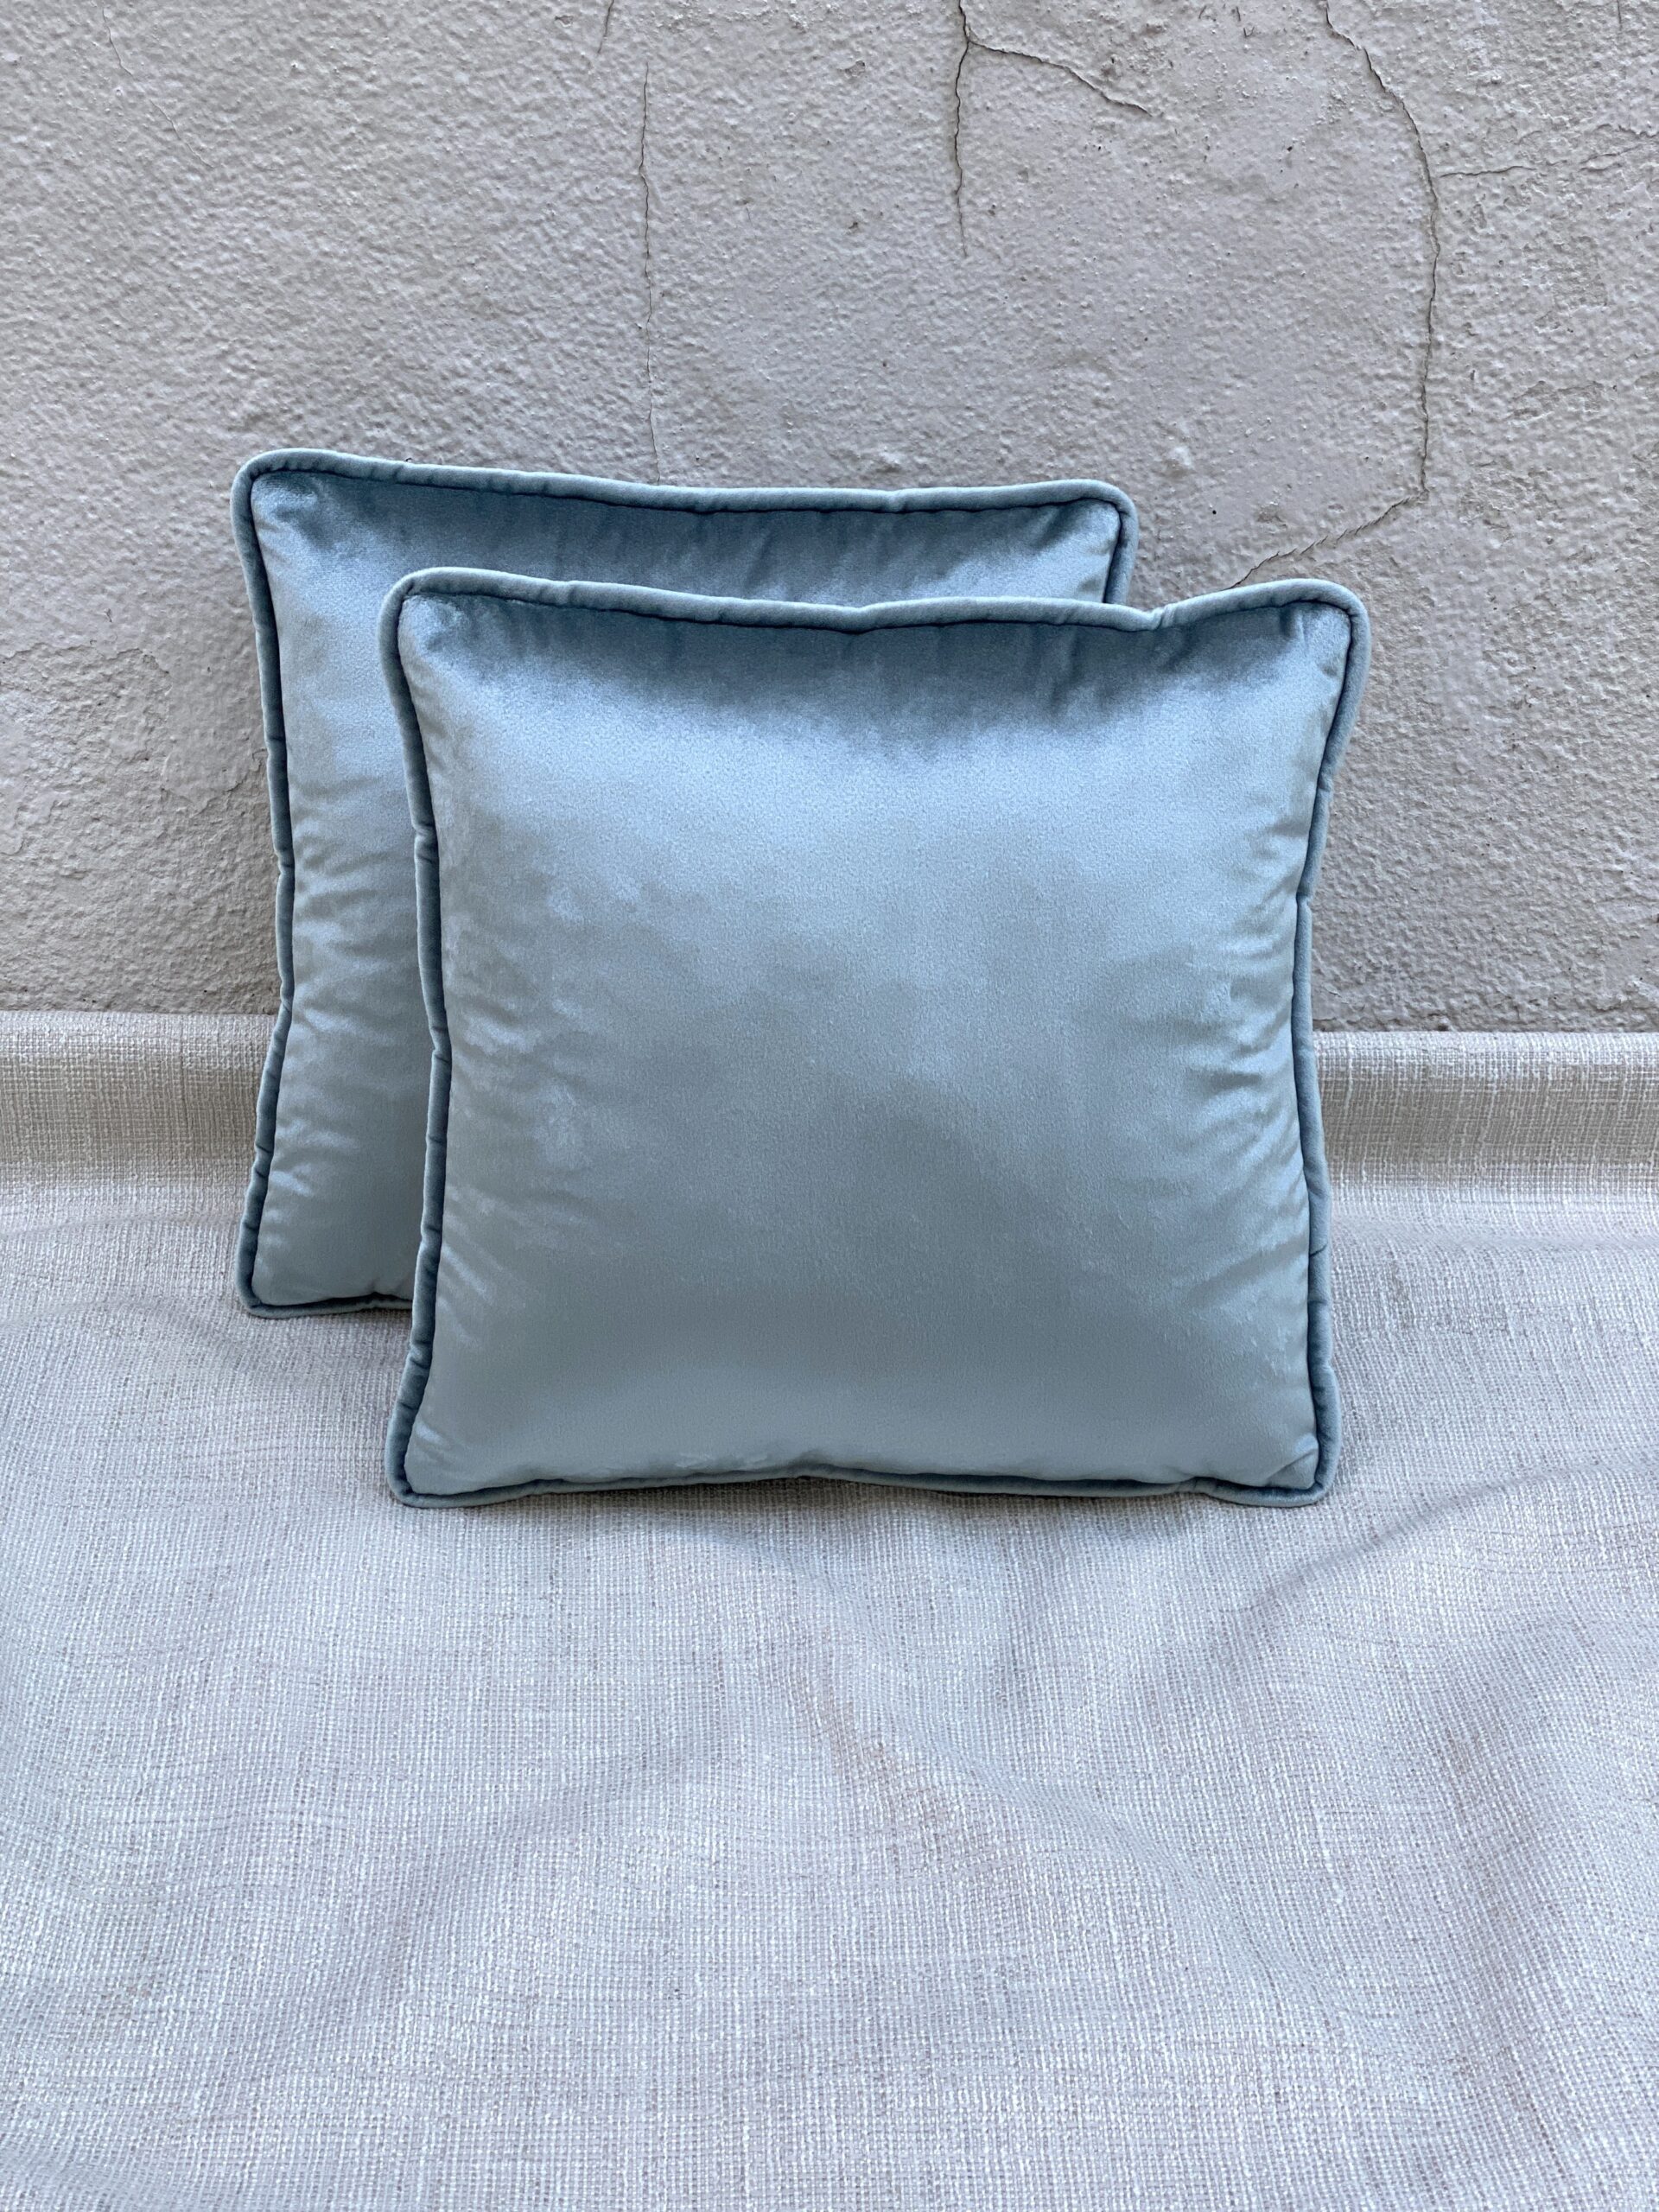 Novel Ithaca Pillows